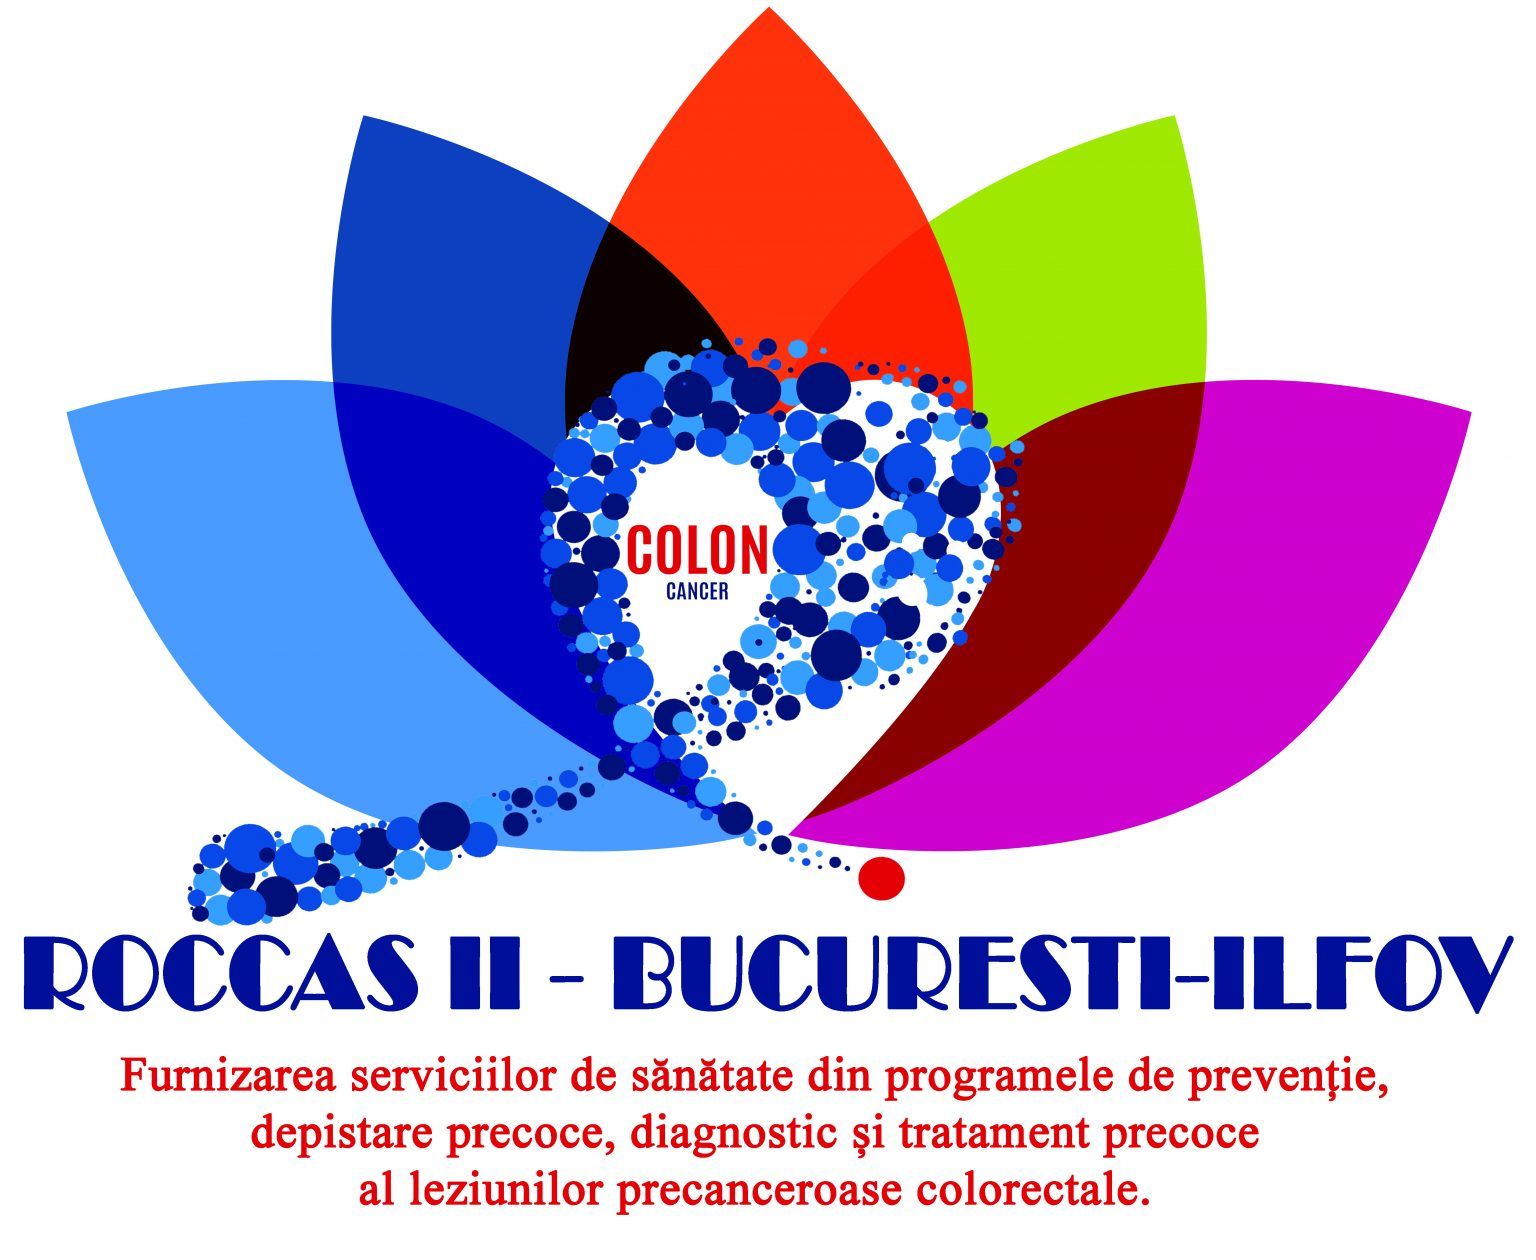 Proiect nou de screening pentru cancerul colorectal